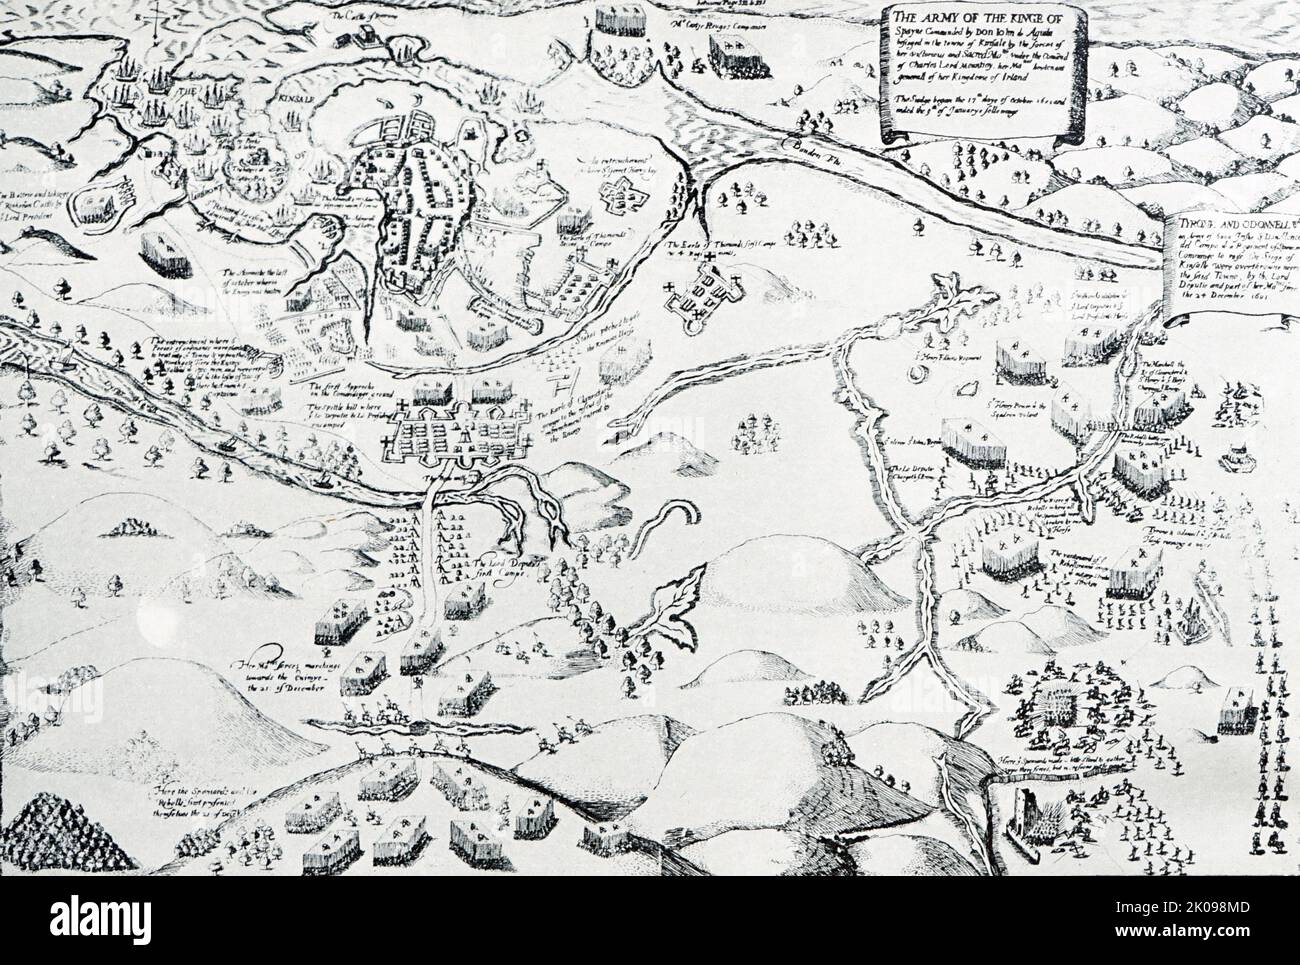 Panoramabild der Belagerung und Schlacht von Kinsale von George Carew. Die Belagerung von Kinsale, oder die Schlacht von Kinsale, war die ultimative Schlacht bei Englands Eroberung von Gälisch-Irland, die im Oktober 1601 begann, nahe dem Ende der Herrschaft von Königin Elizabeth I., und am Höhepunkt des neun-Jahres-Krieges -- Eine Kampagne von Hugh O'Neill, Hugh Roe O'Donnell und anderen irischen Lords gegen die englische Herrschaft. Stockfoto